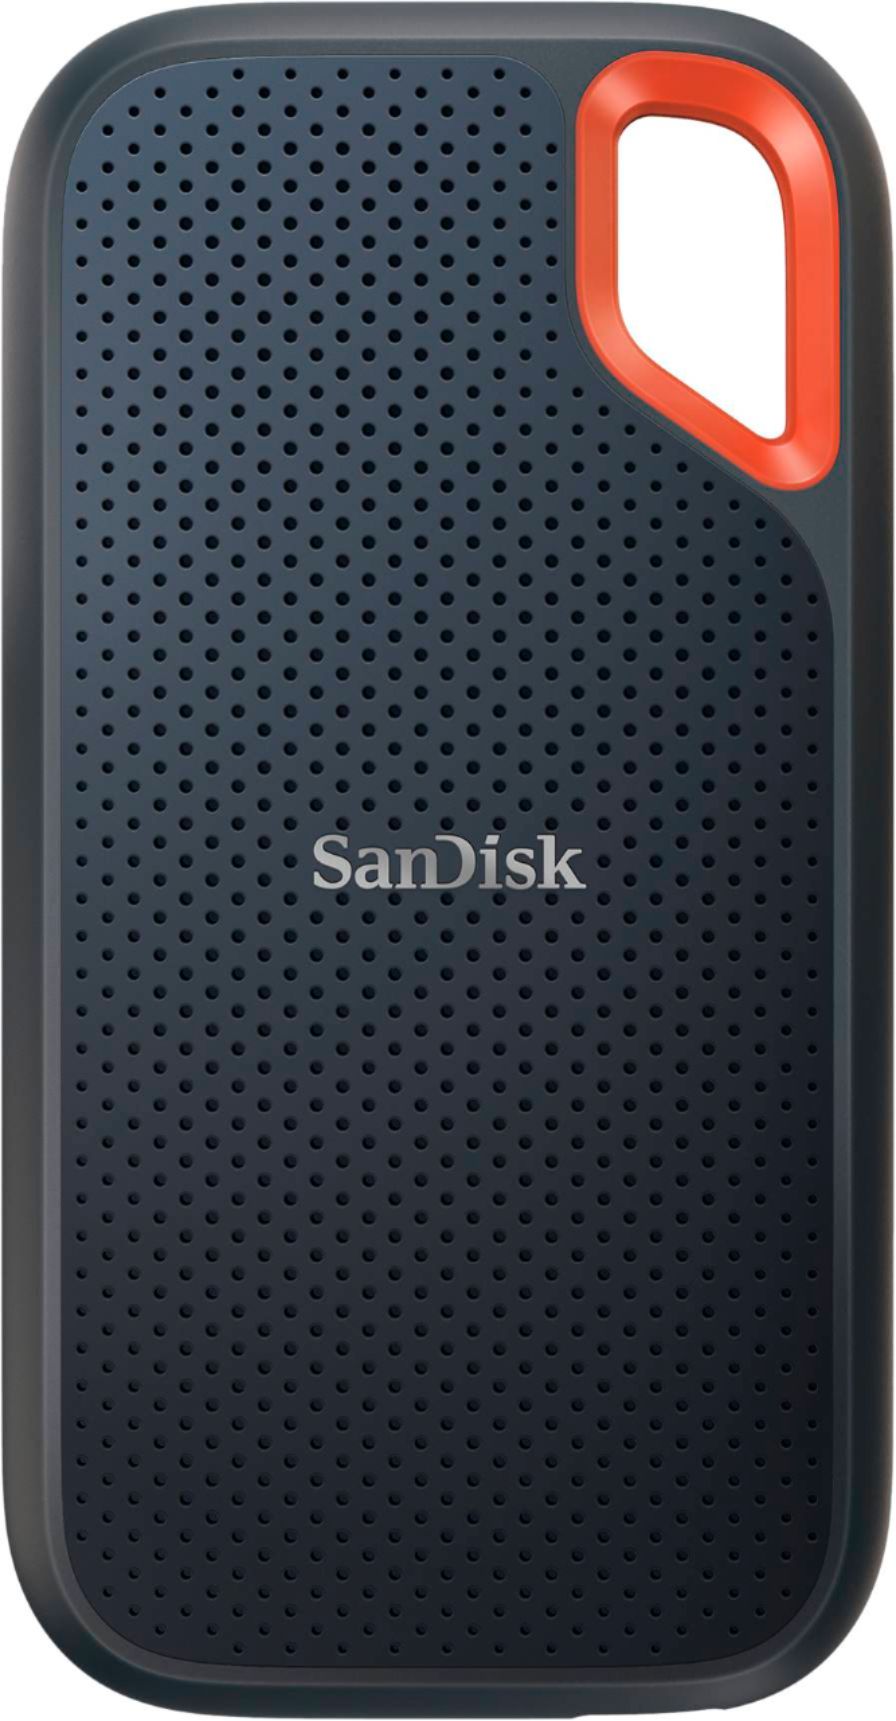 SanDisk Extreme Portable 500GB External USB-C NVMe SSD Black  SDSSDE61-500G-G25 - Best Buy